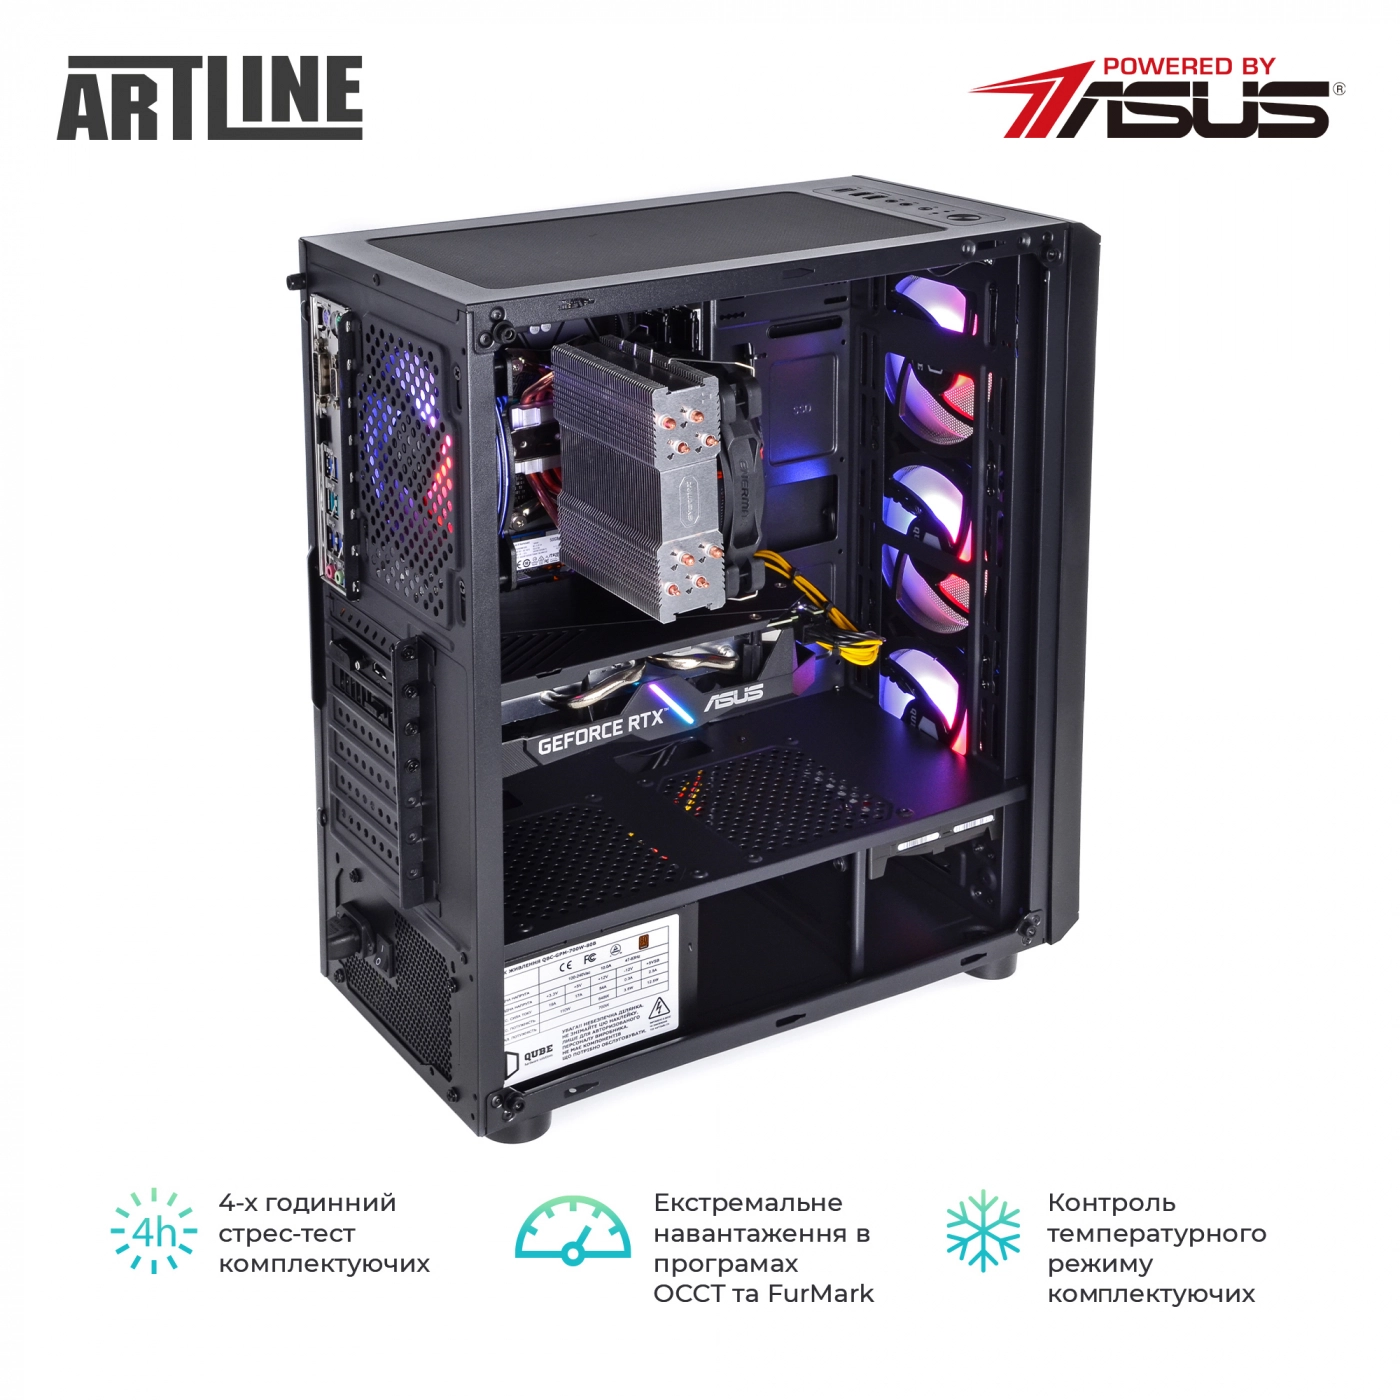 Купить Компьютер ARTLINE Gaming X53v30 - фото 8